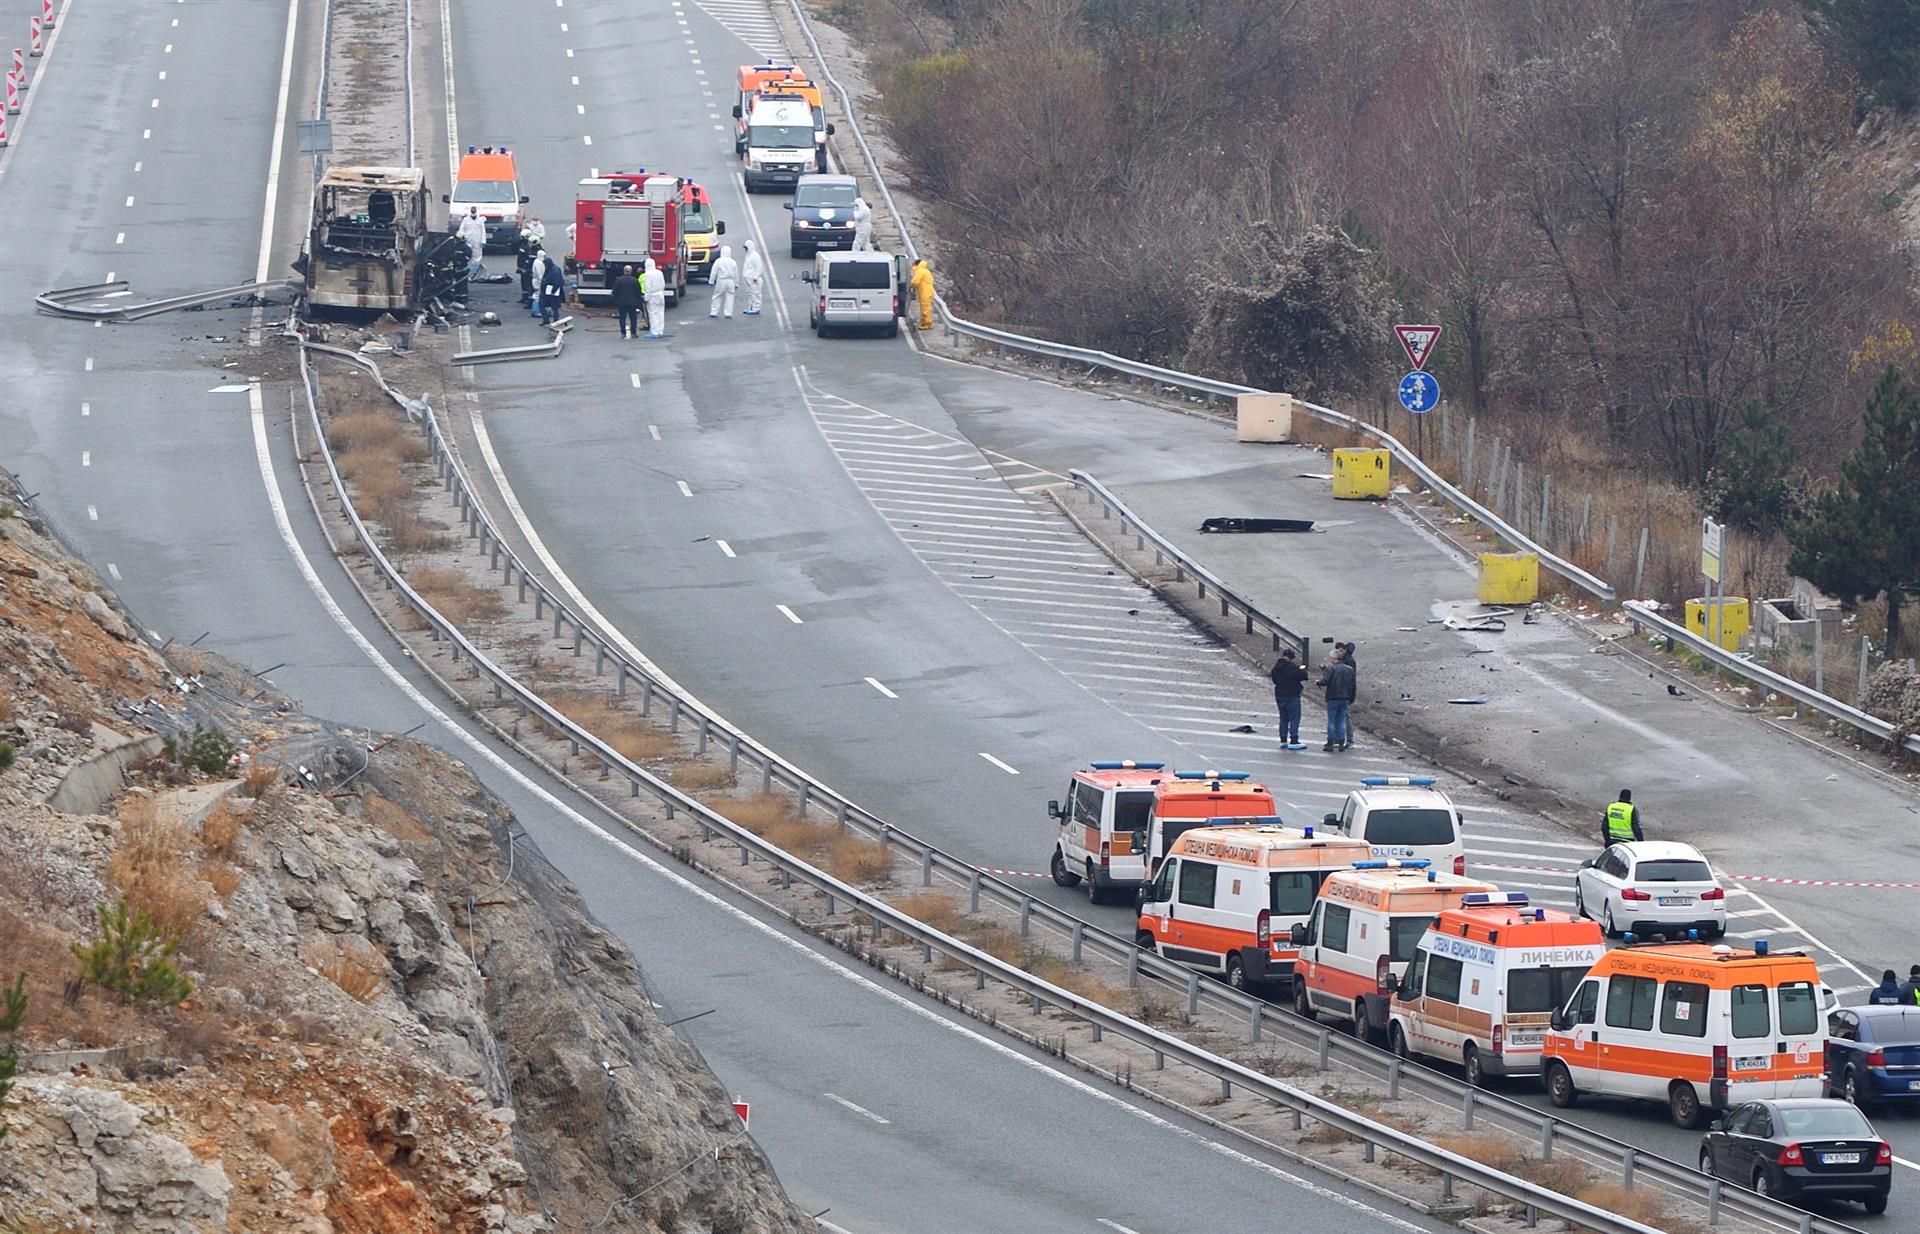 Tragedia en Bulgaria: error de conductor generó colisión donde murieron más de 40 personas